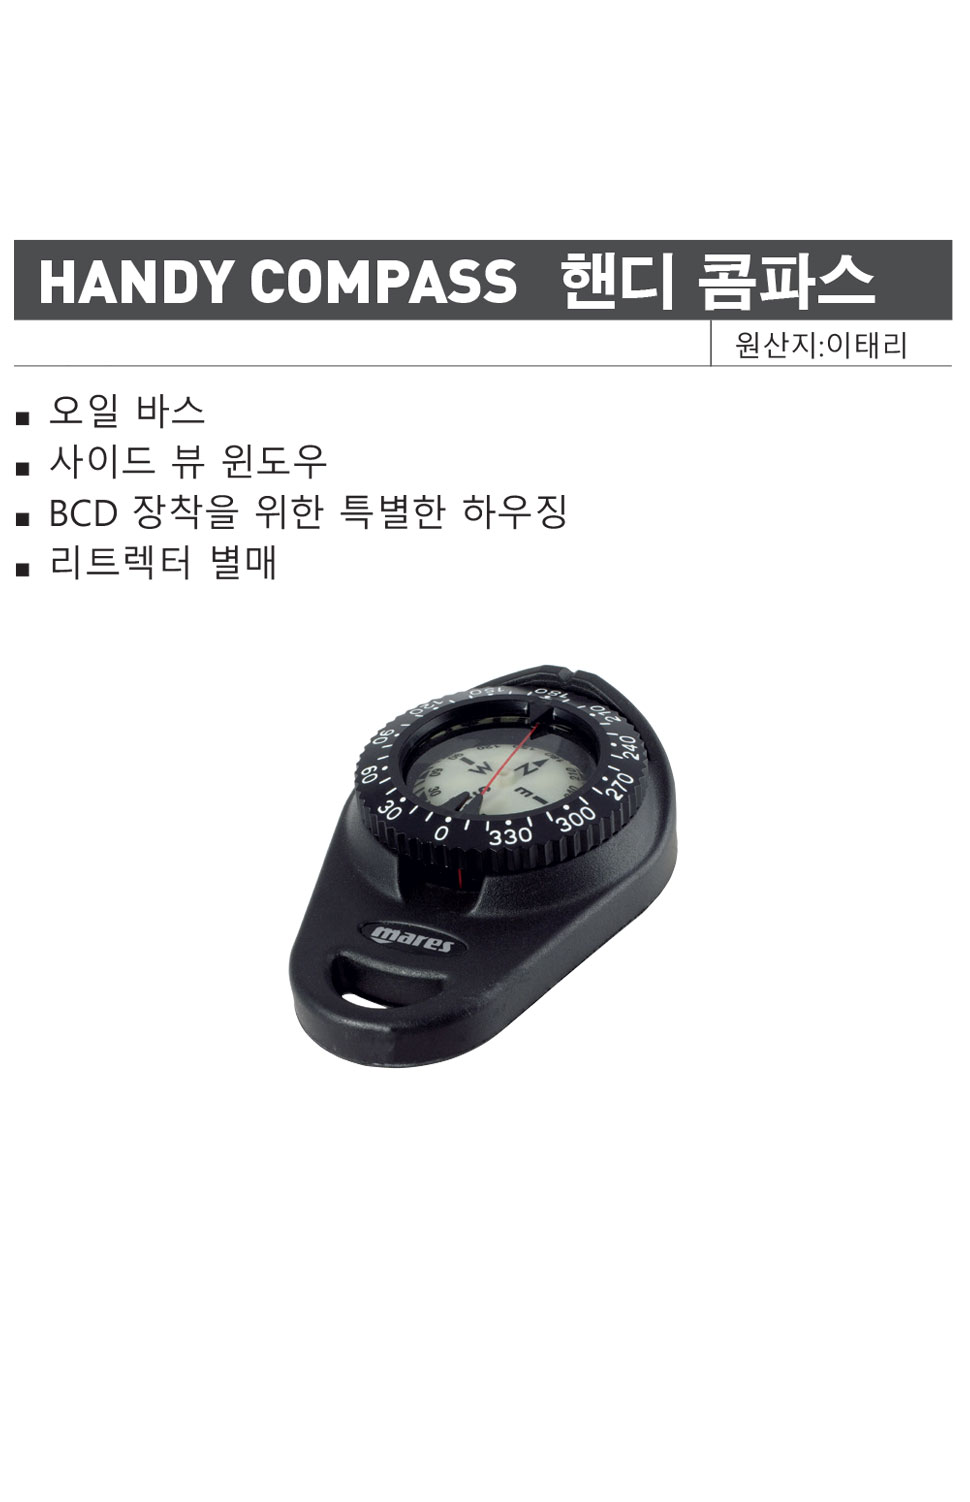 handycompass_d.jpg